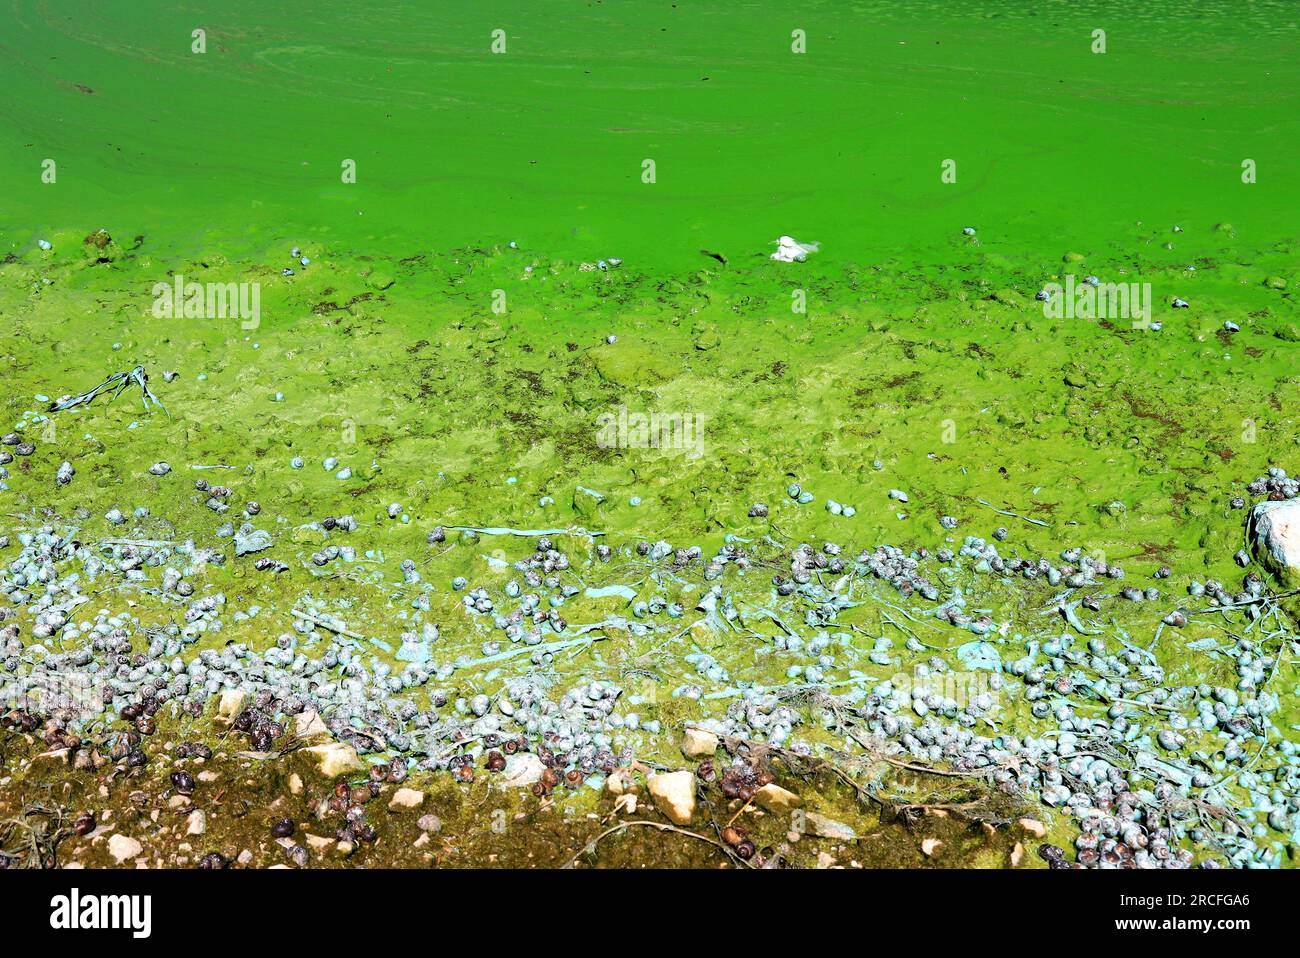 Die Wasserverschmutzung durch blühende Blaualgen ist ein weltweites Umweltproblem. Wasser, Flüsse und Seen mit schädlichen Algenblüten. Zur Ökologie der Verschmutzung Stockfoto